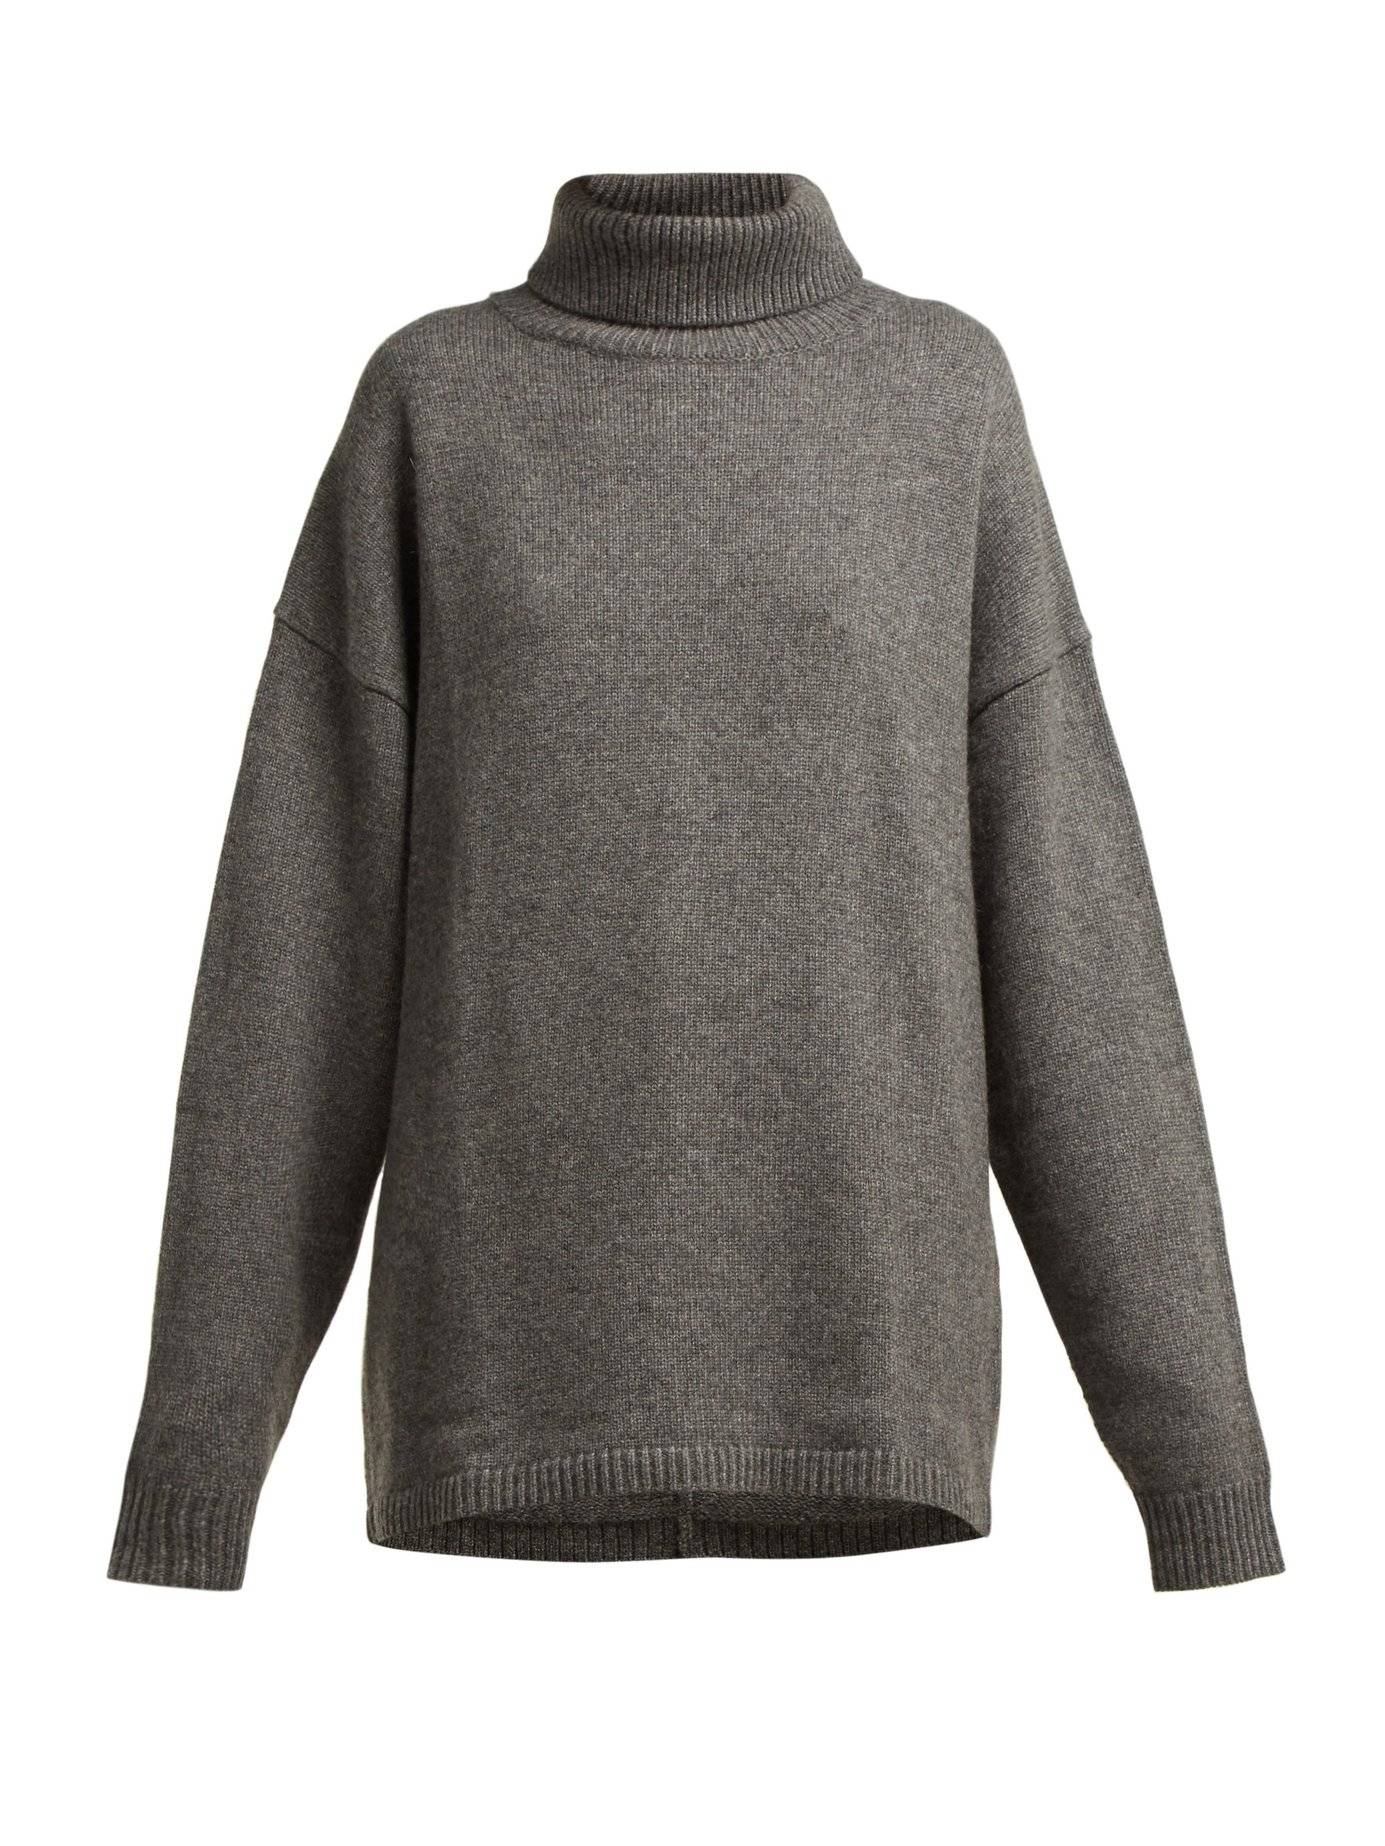 Утепляемся: 25 стильных свитеров на осень